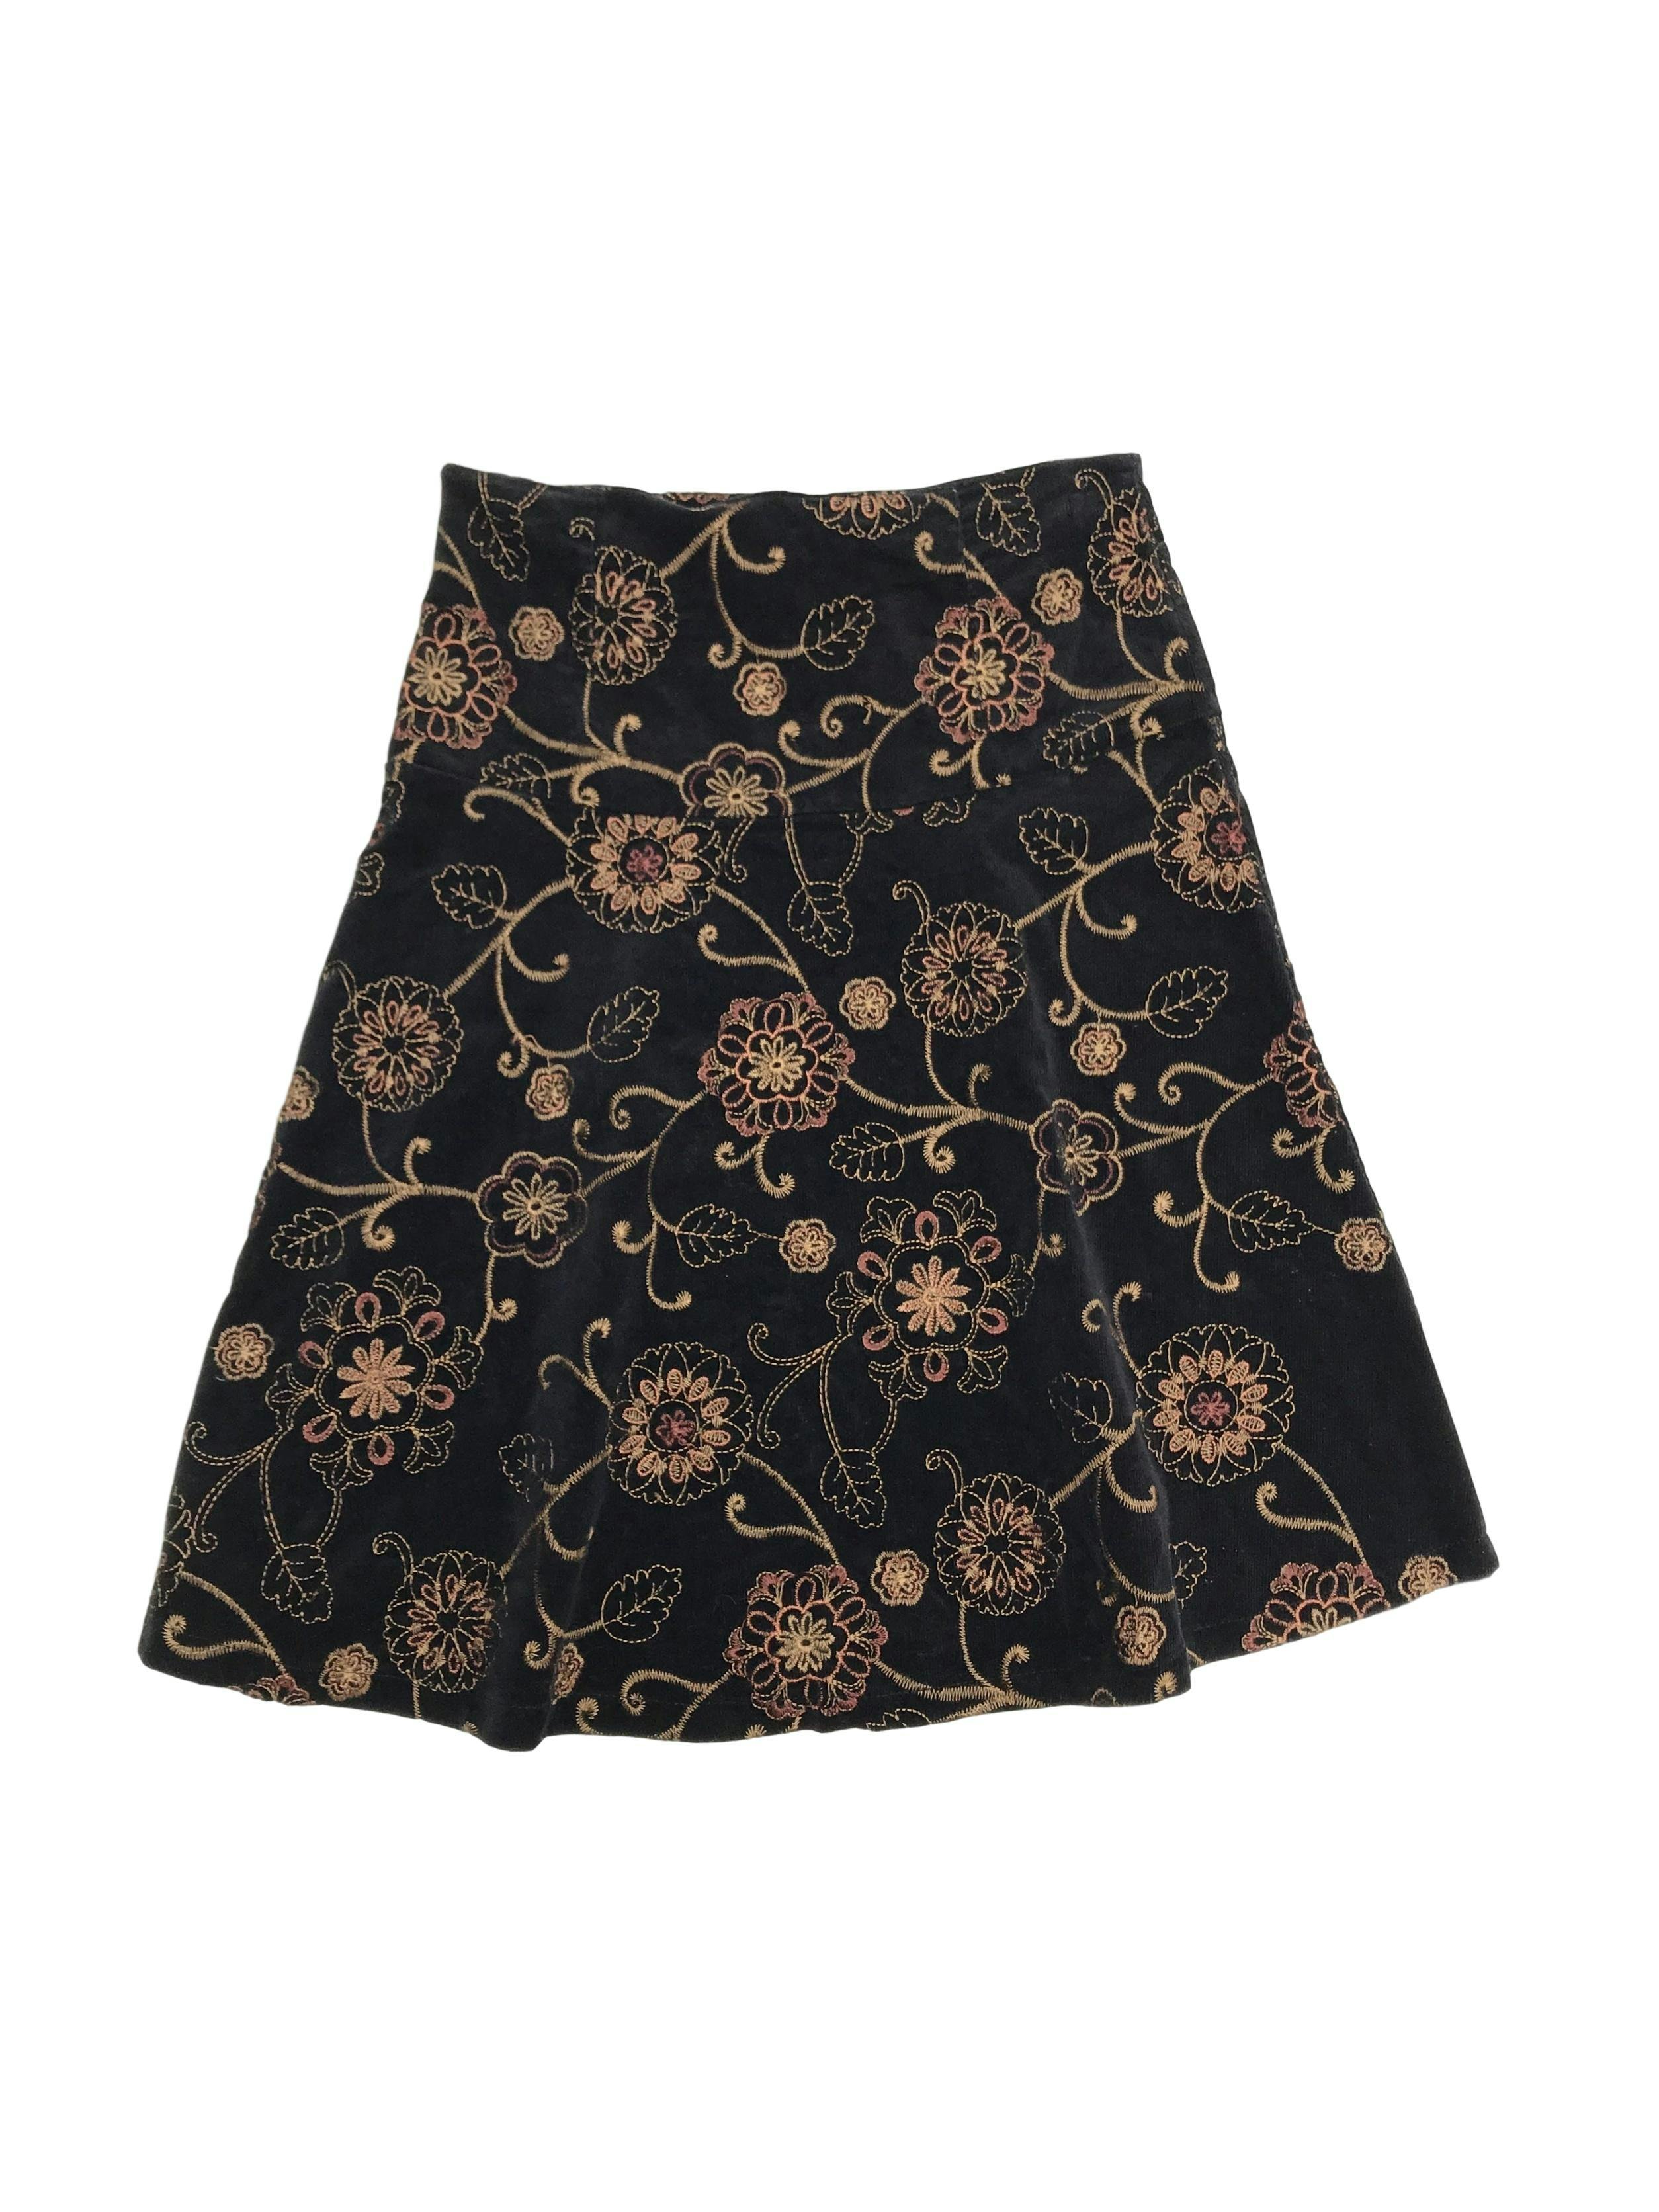 Falda de corduroy negro con bordado de flores doradas, falda en A, pretina ancha con cierre lateral. Largo 60cm
Talla S